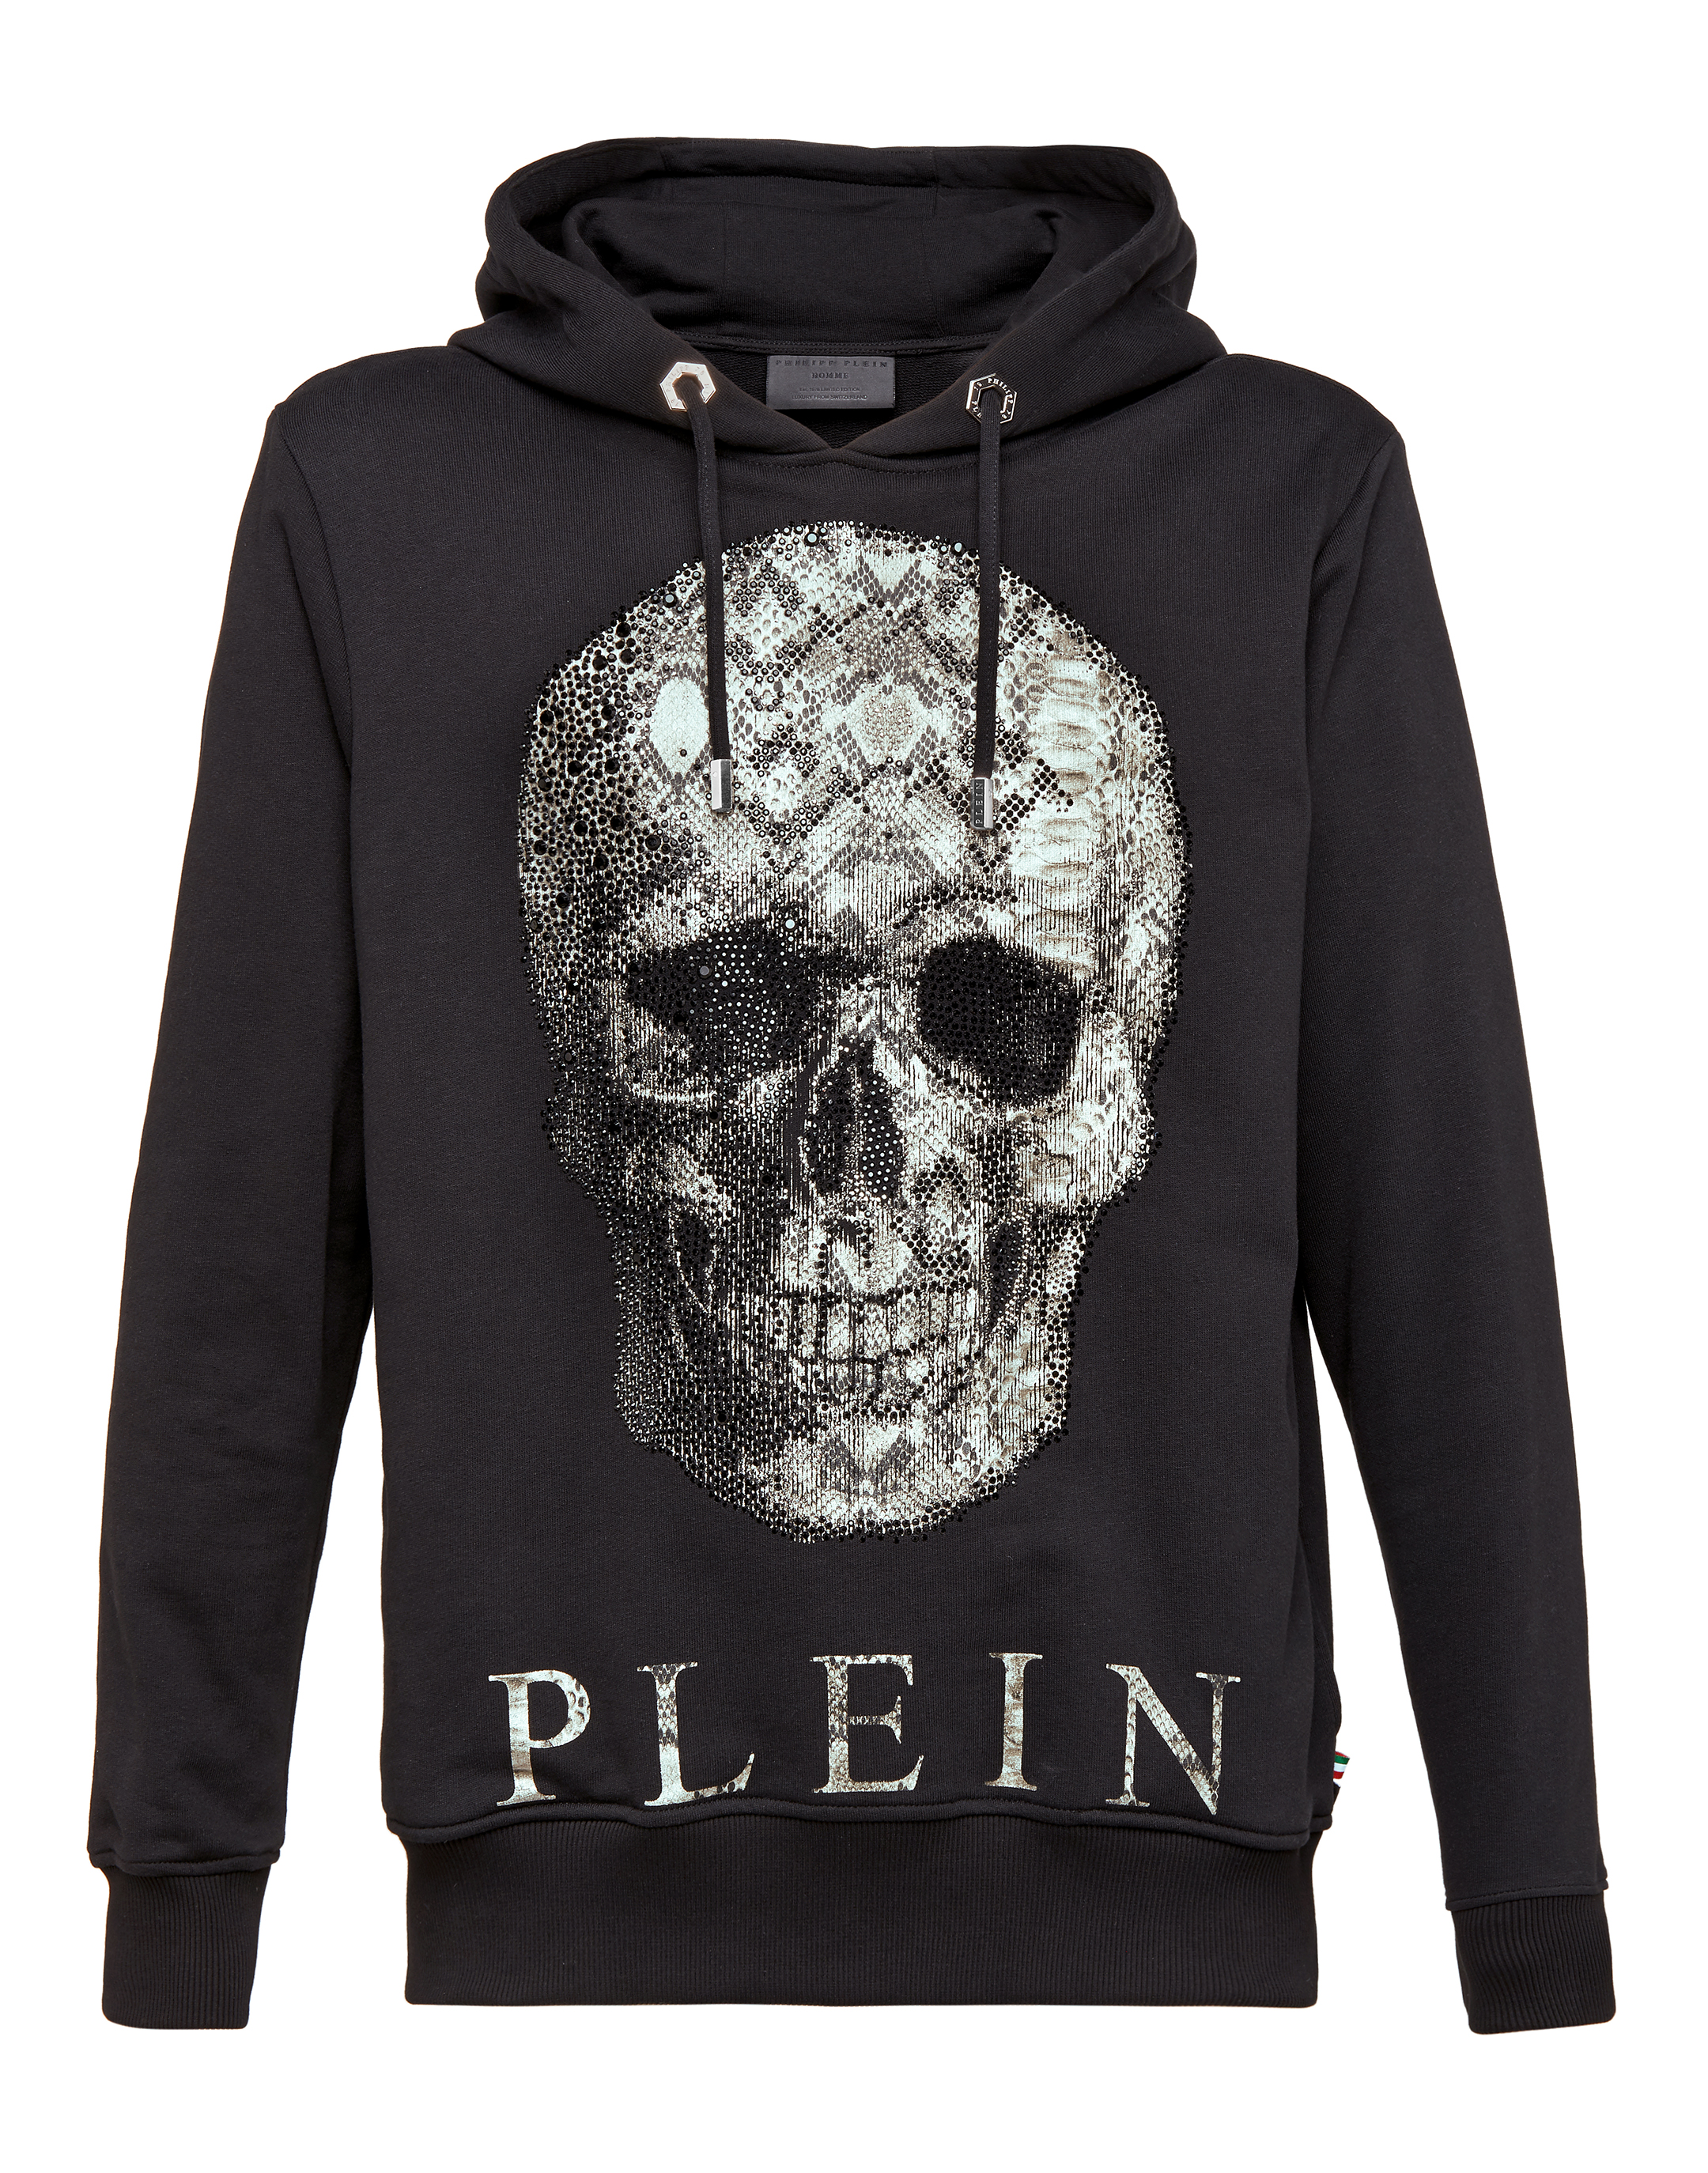 philipp plein skull sweater